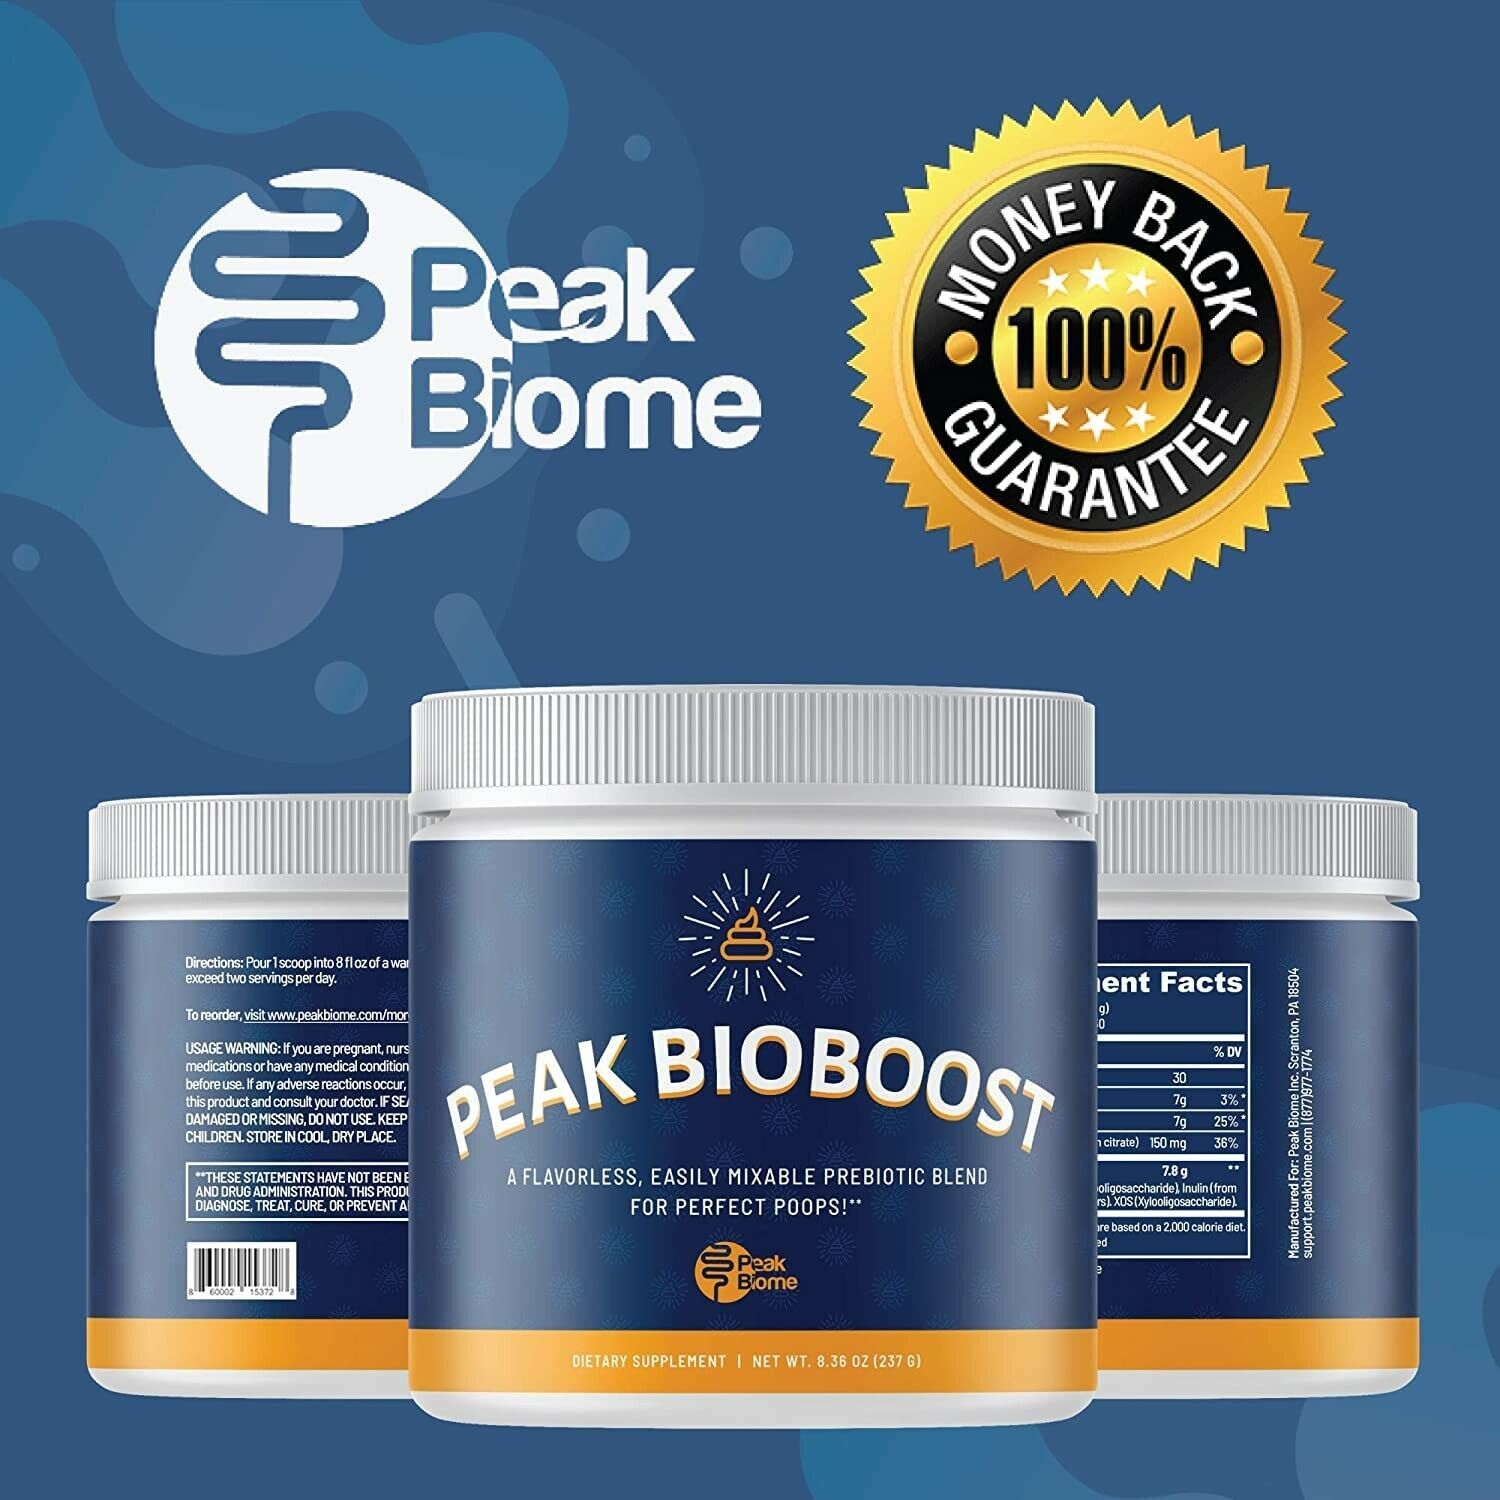 does peak bioboost really work